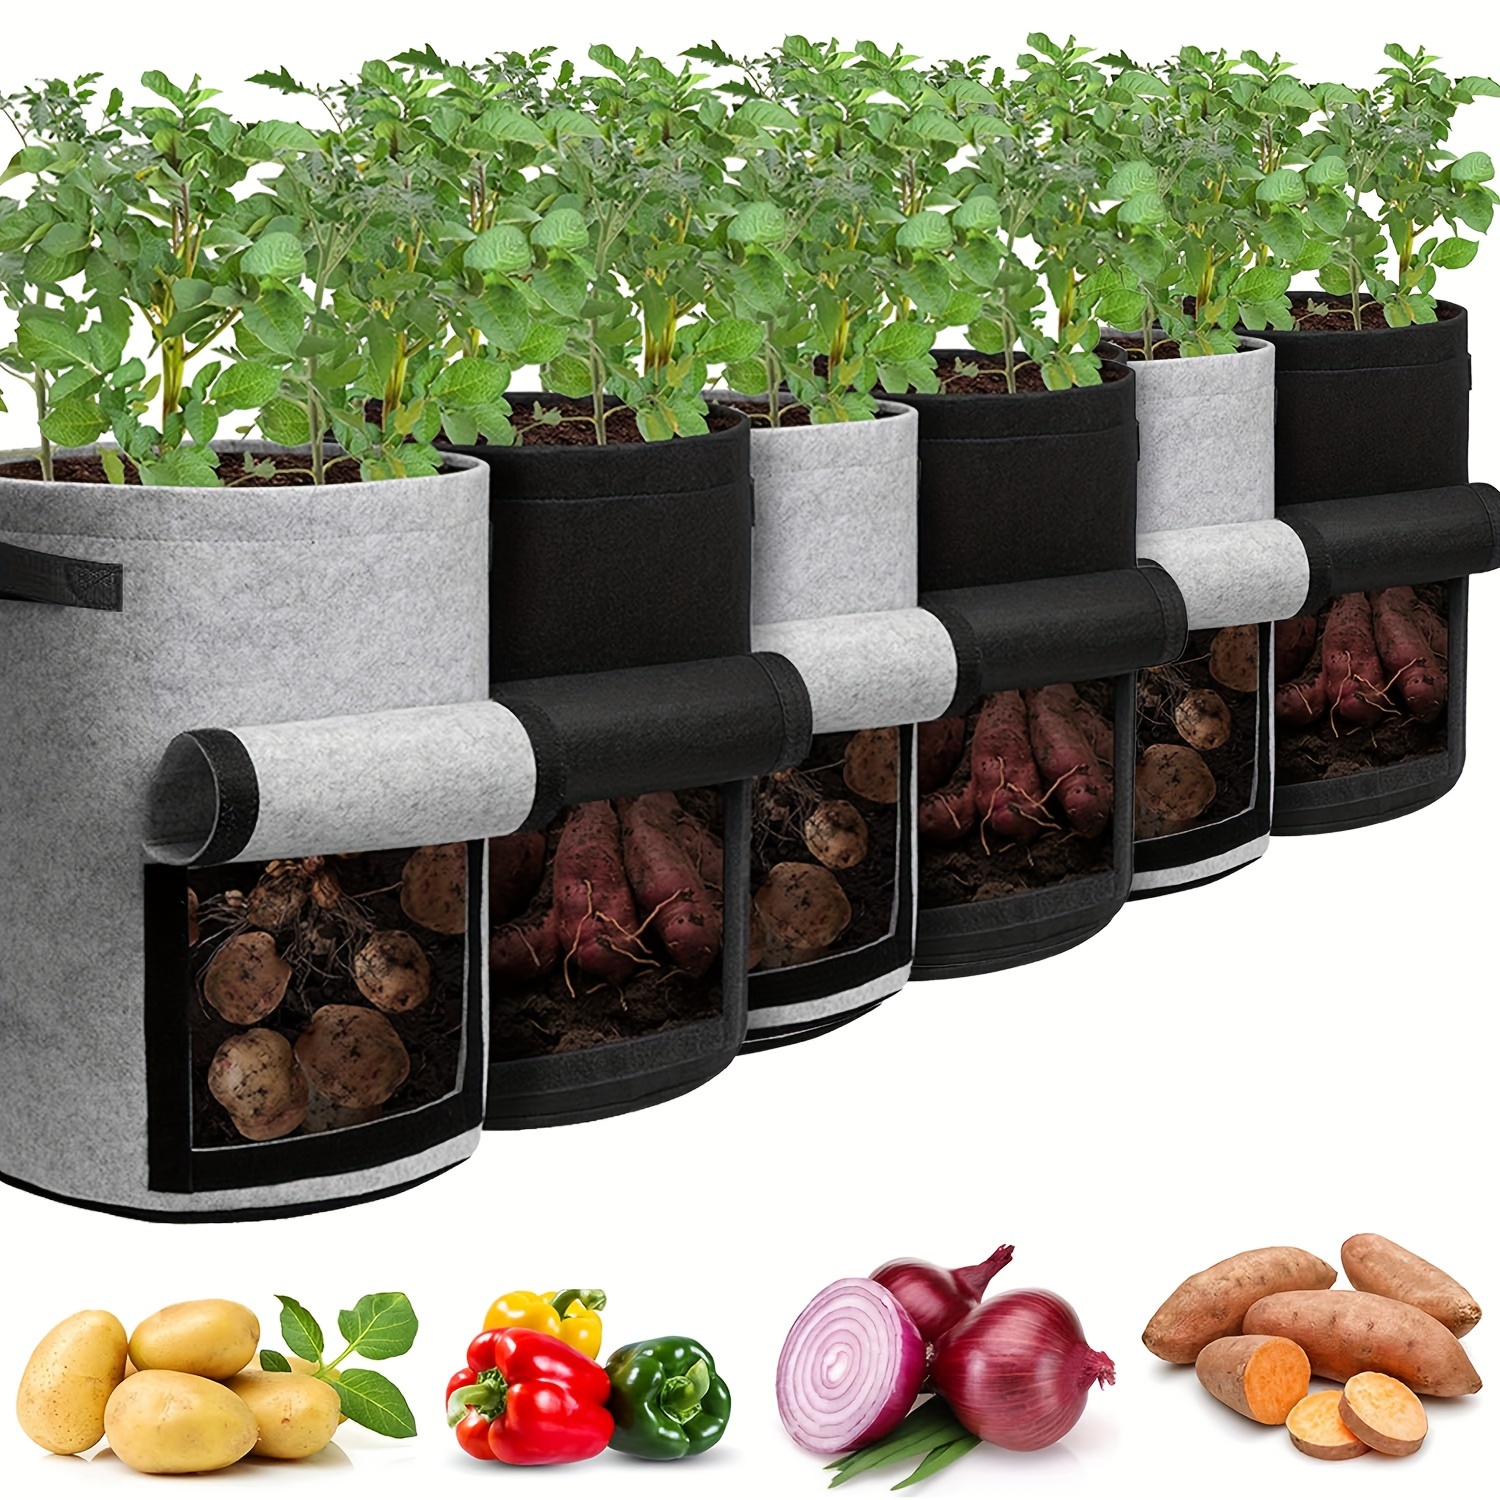 

Lot de 6 sacs de culture de pommes de terre de 10 gallons avec fenêtre à rabat, sac de plantation de jardin avec poignée durable, pots de plantation pour tomates, légumes et fruits